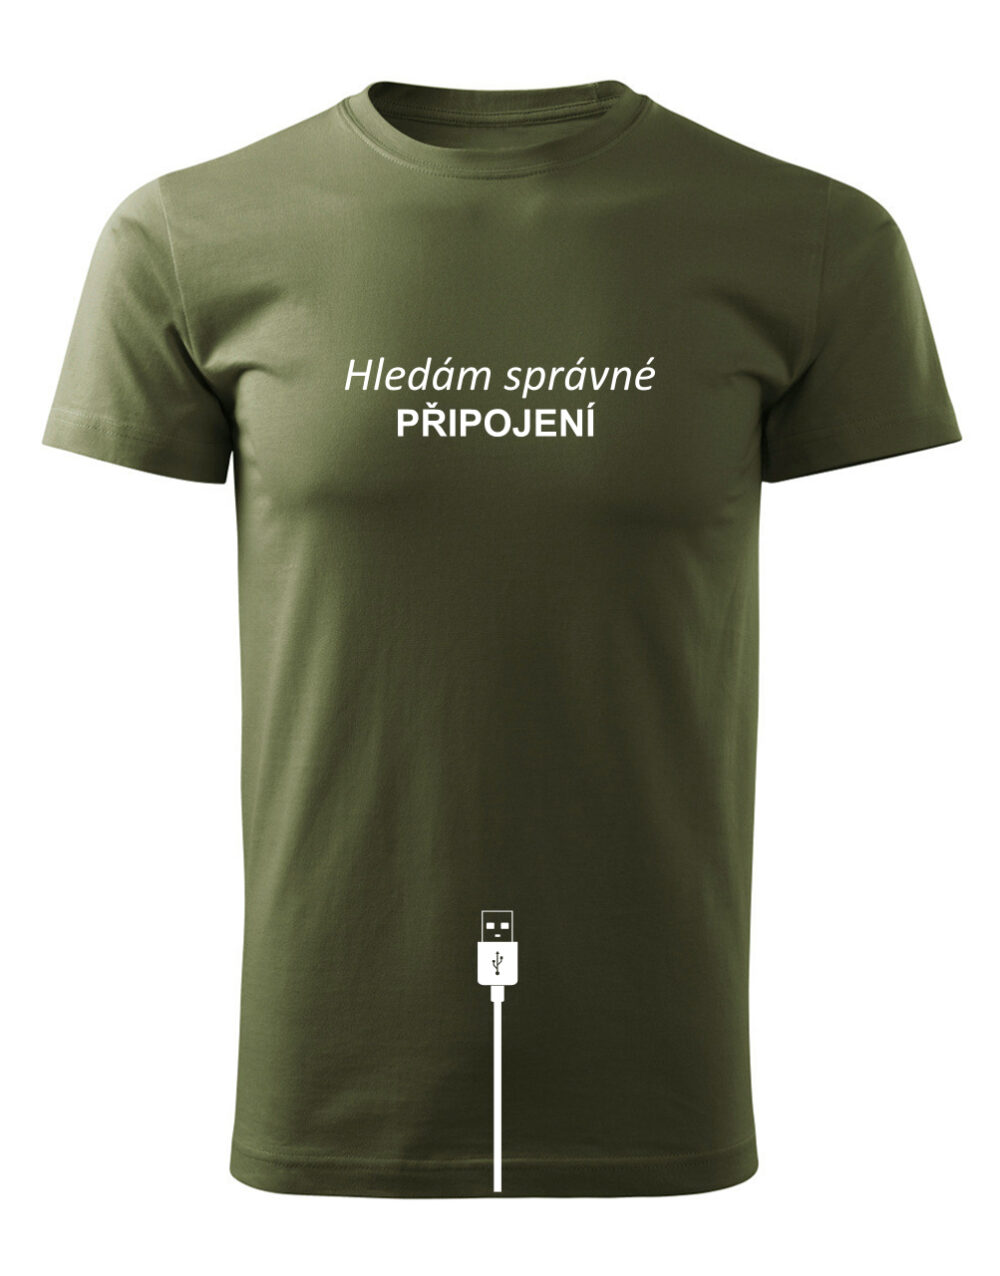 Pánské tričko s potiskem Hledám správné připojení vojenská zelená